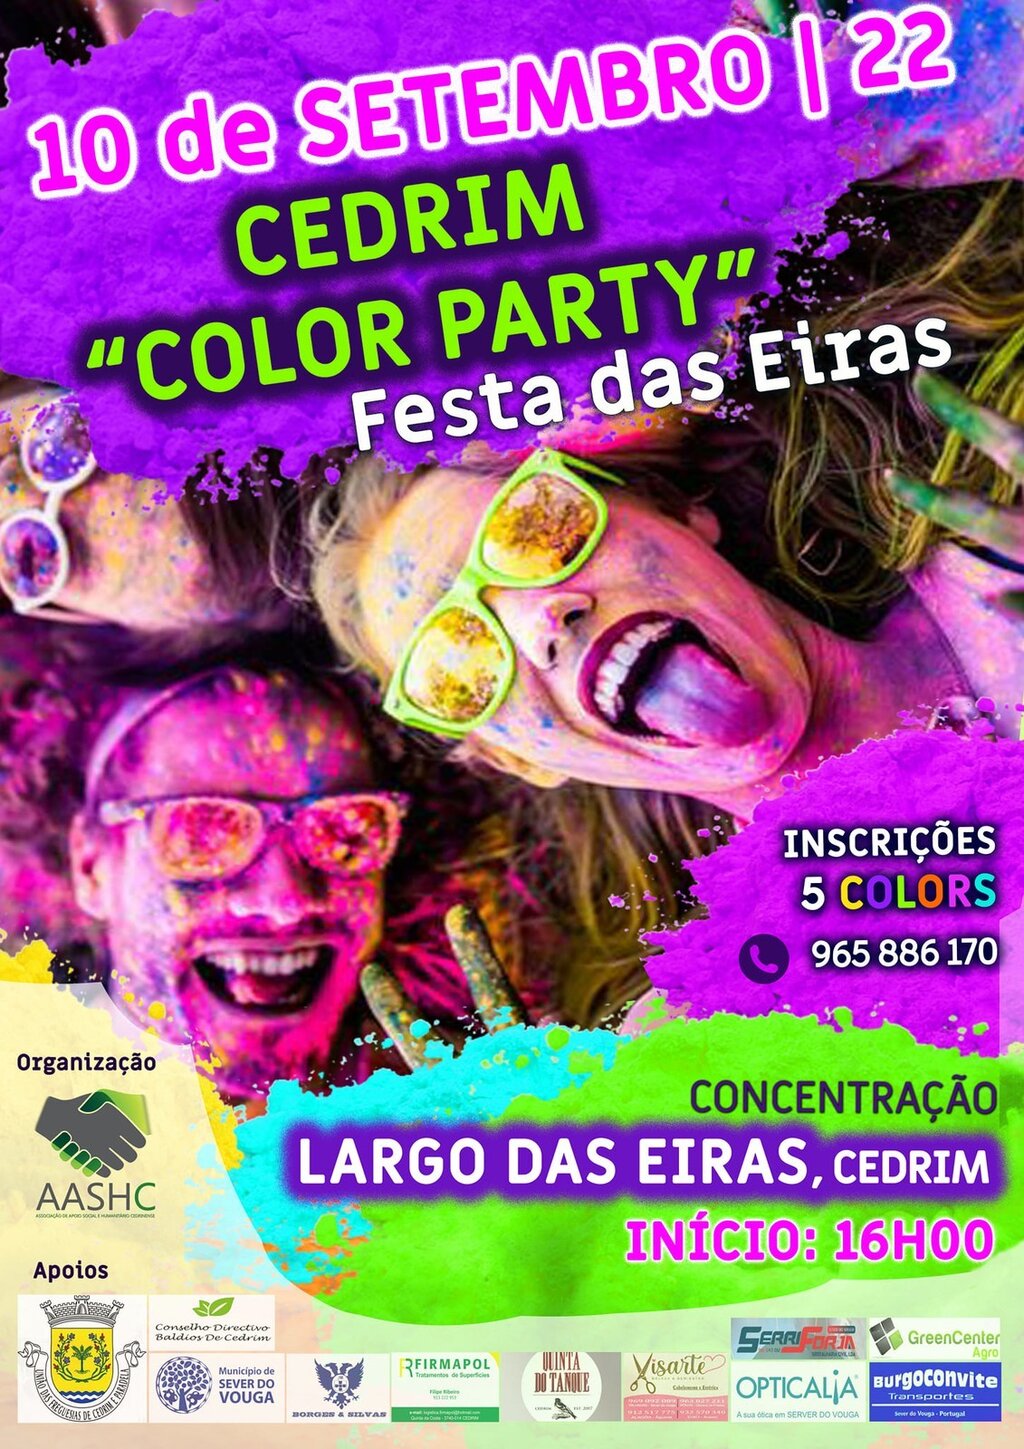 10 setembro - Color Party - Cedrim